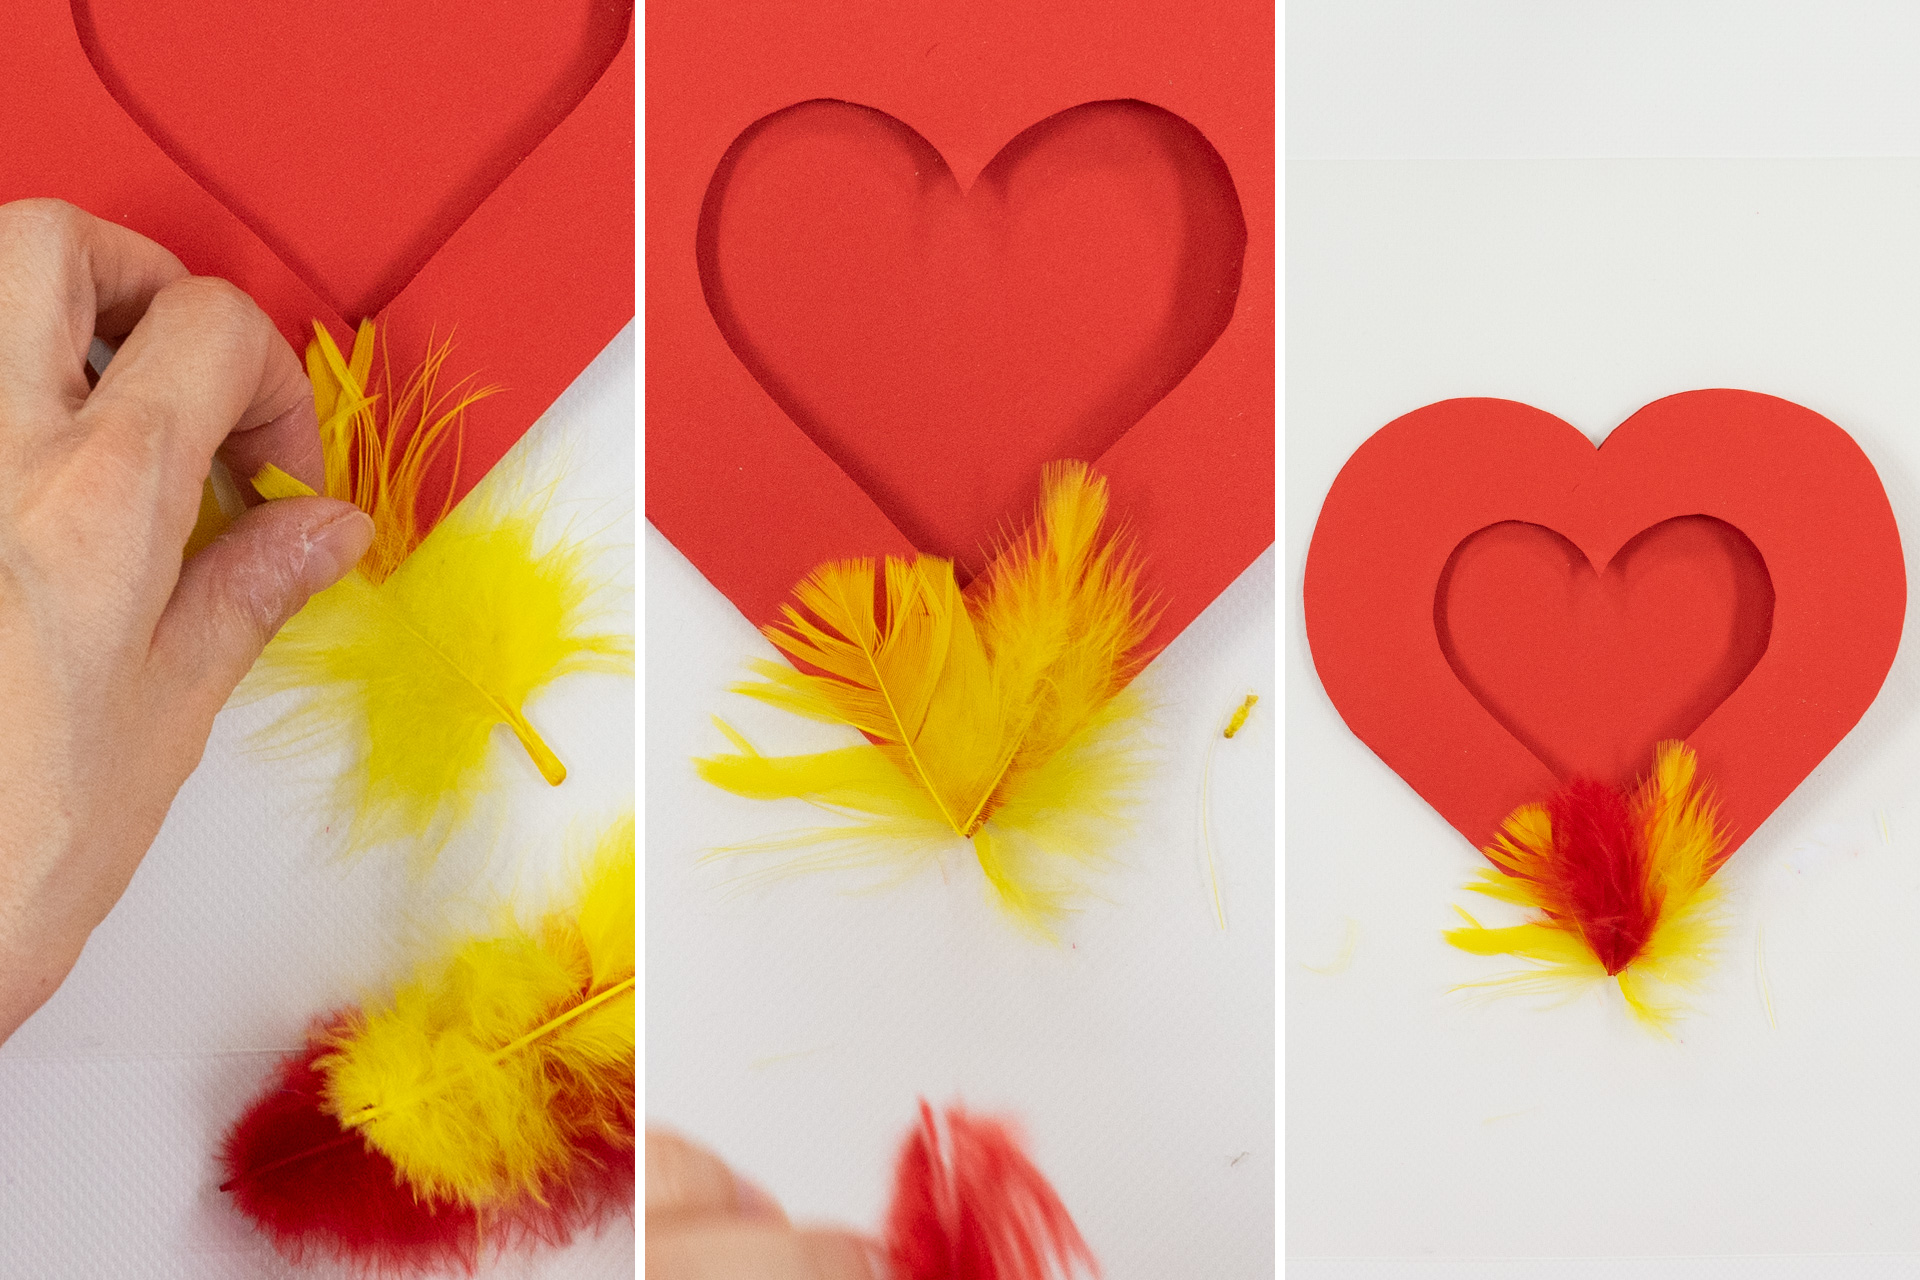 <p>Nun dekoriere ich die Vorderseite der Herzkarte. Dazu nehme ich eine rote und zwei gelbe Federn. Alle Federn werden etwas 